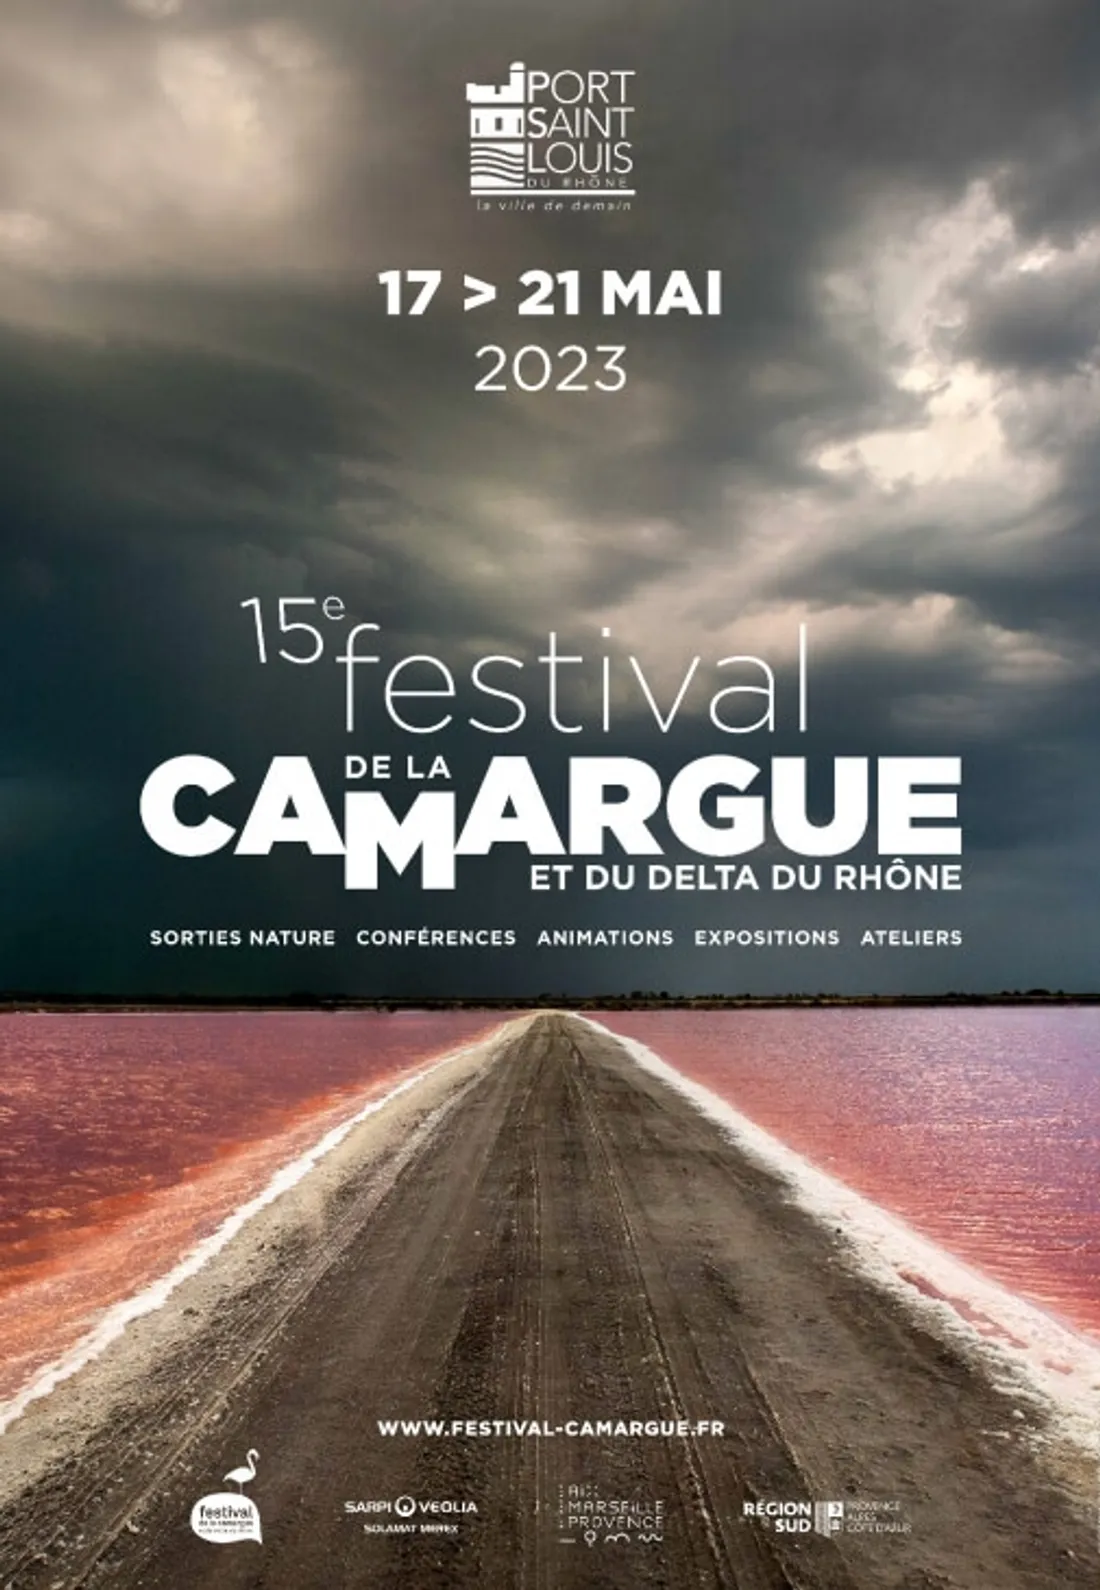 Festival de camargue - Port Saint Louis du Rhône